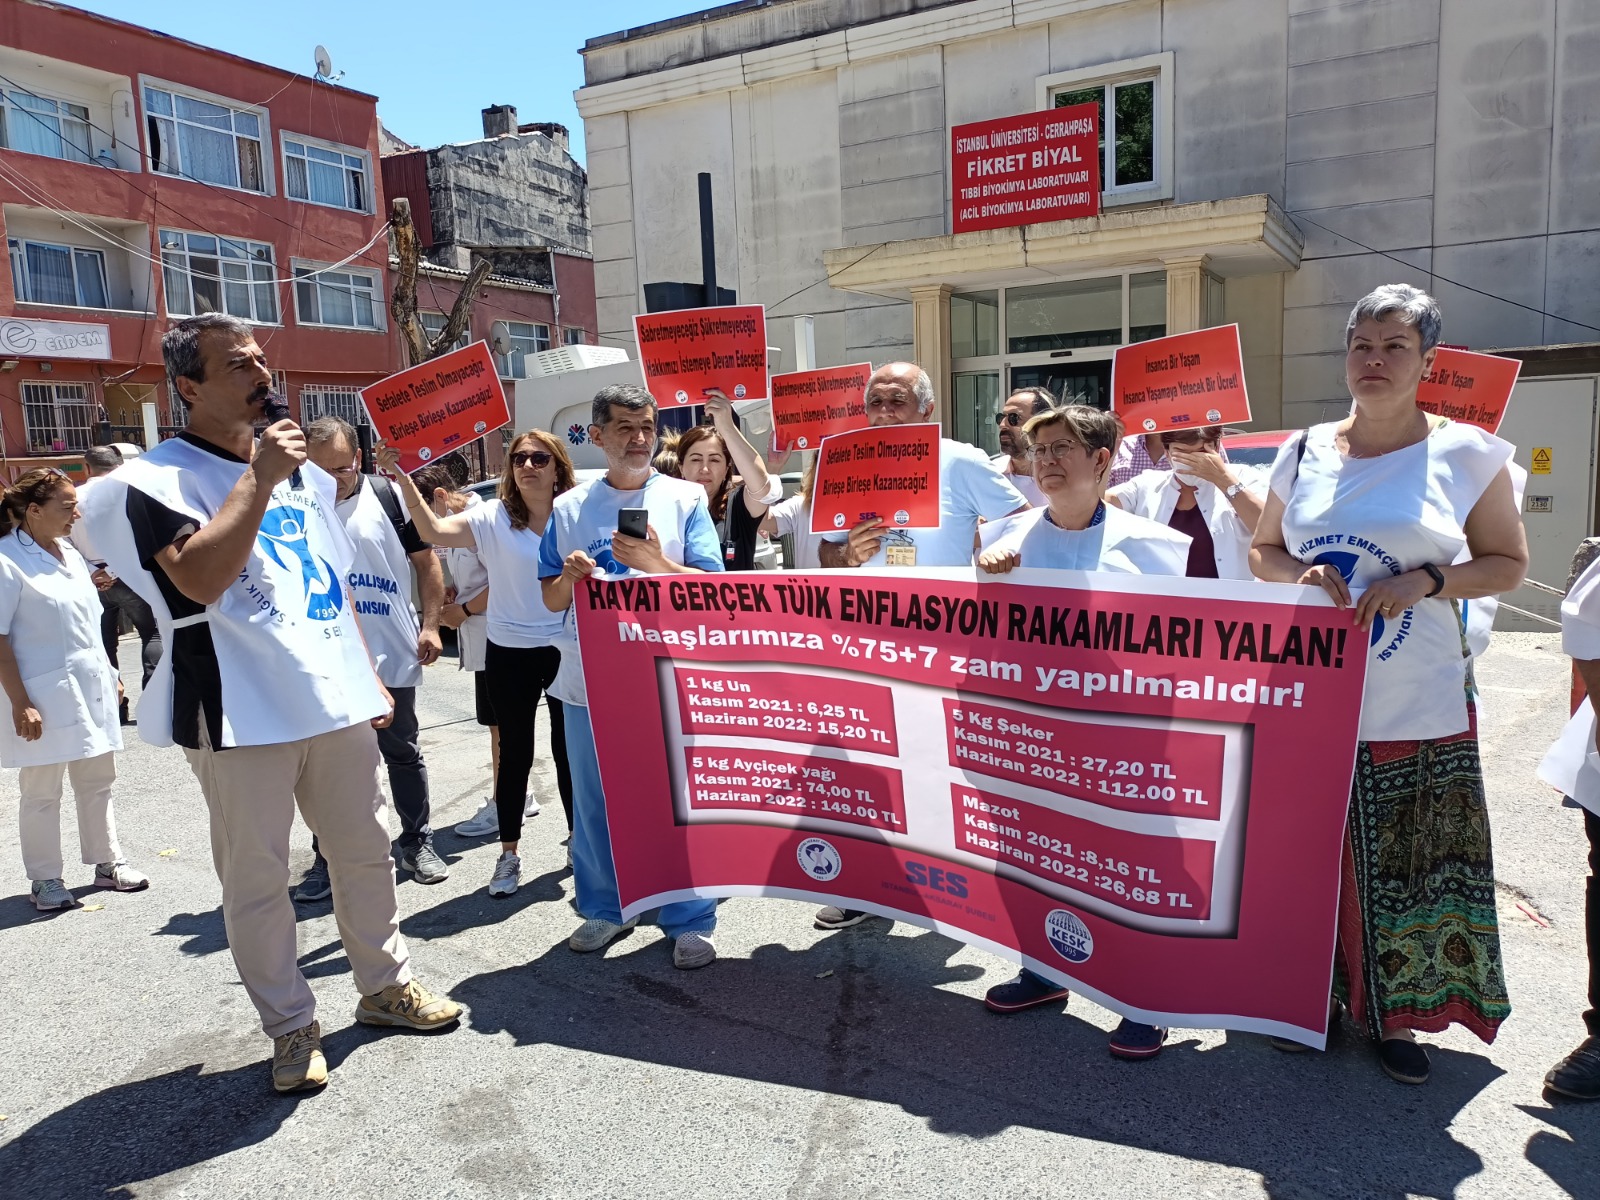 İstanbul Aksaray Şubemiz Cerrahpaşa Tıp Fakültesi Hastanesi Önünden Seslendi: Hayat Gerçek, TÜİK Enflasyon Rakamları Yalan!